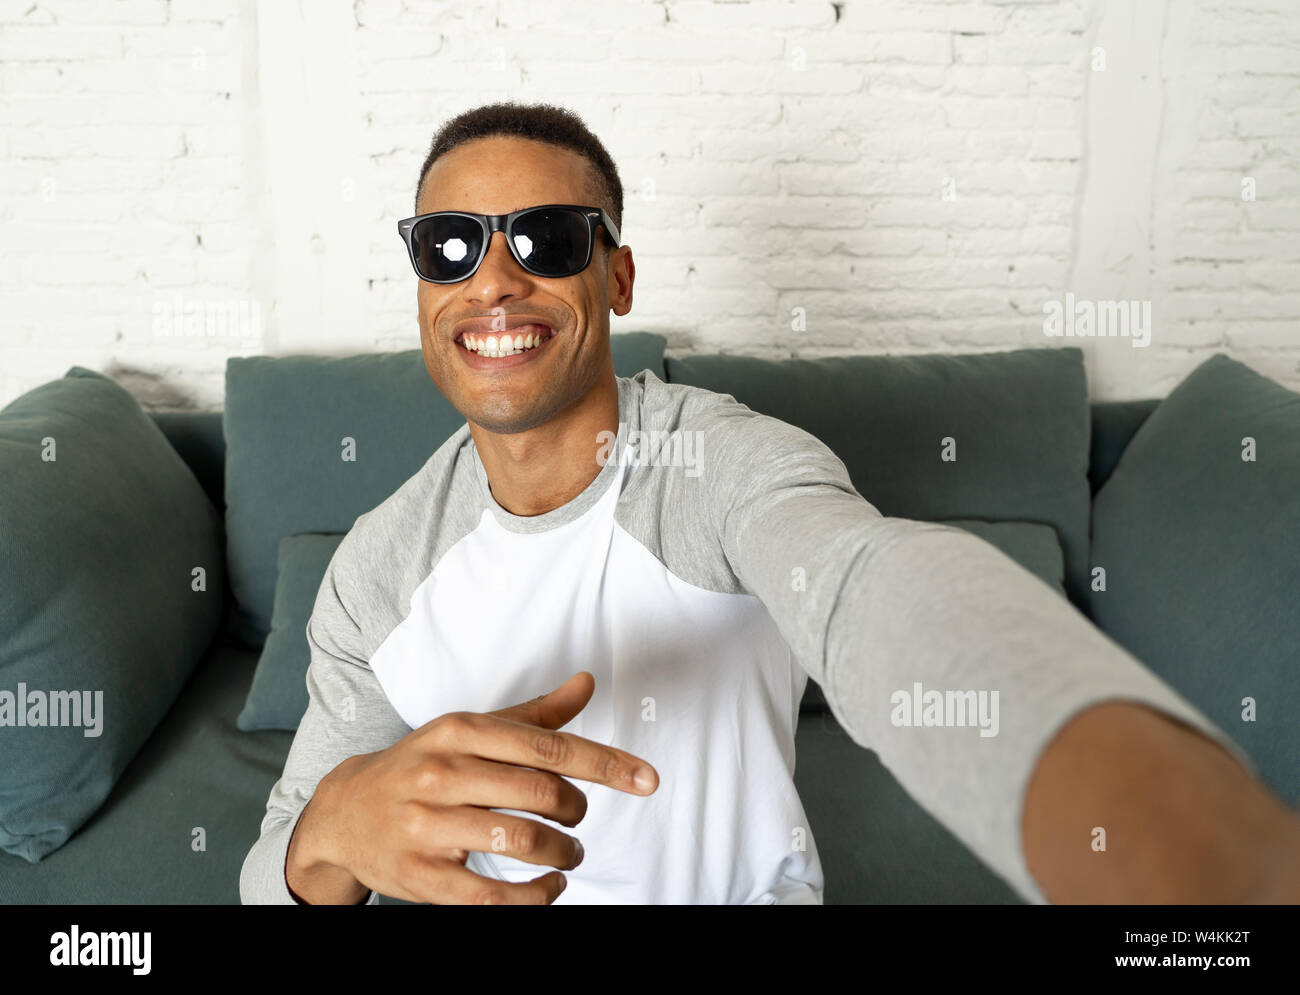 Junge attraktive afrikanische amerikanische Blogger Mann in modernen lässigen Stil holding Kamera oder Smart Phone schießen self portrait oder Aufnahme von Video für seine f Stockfoto